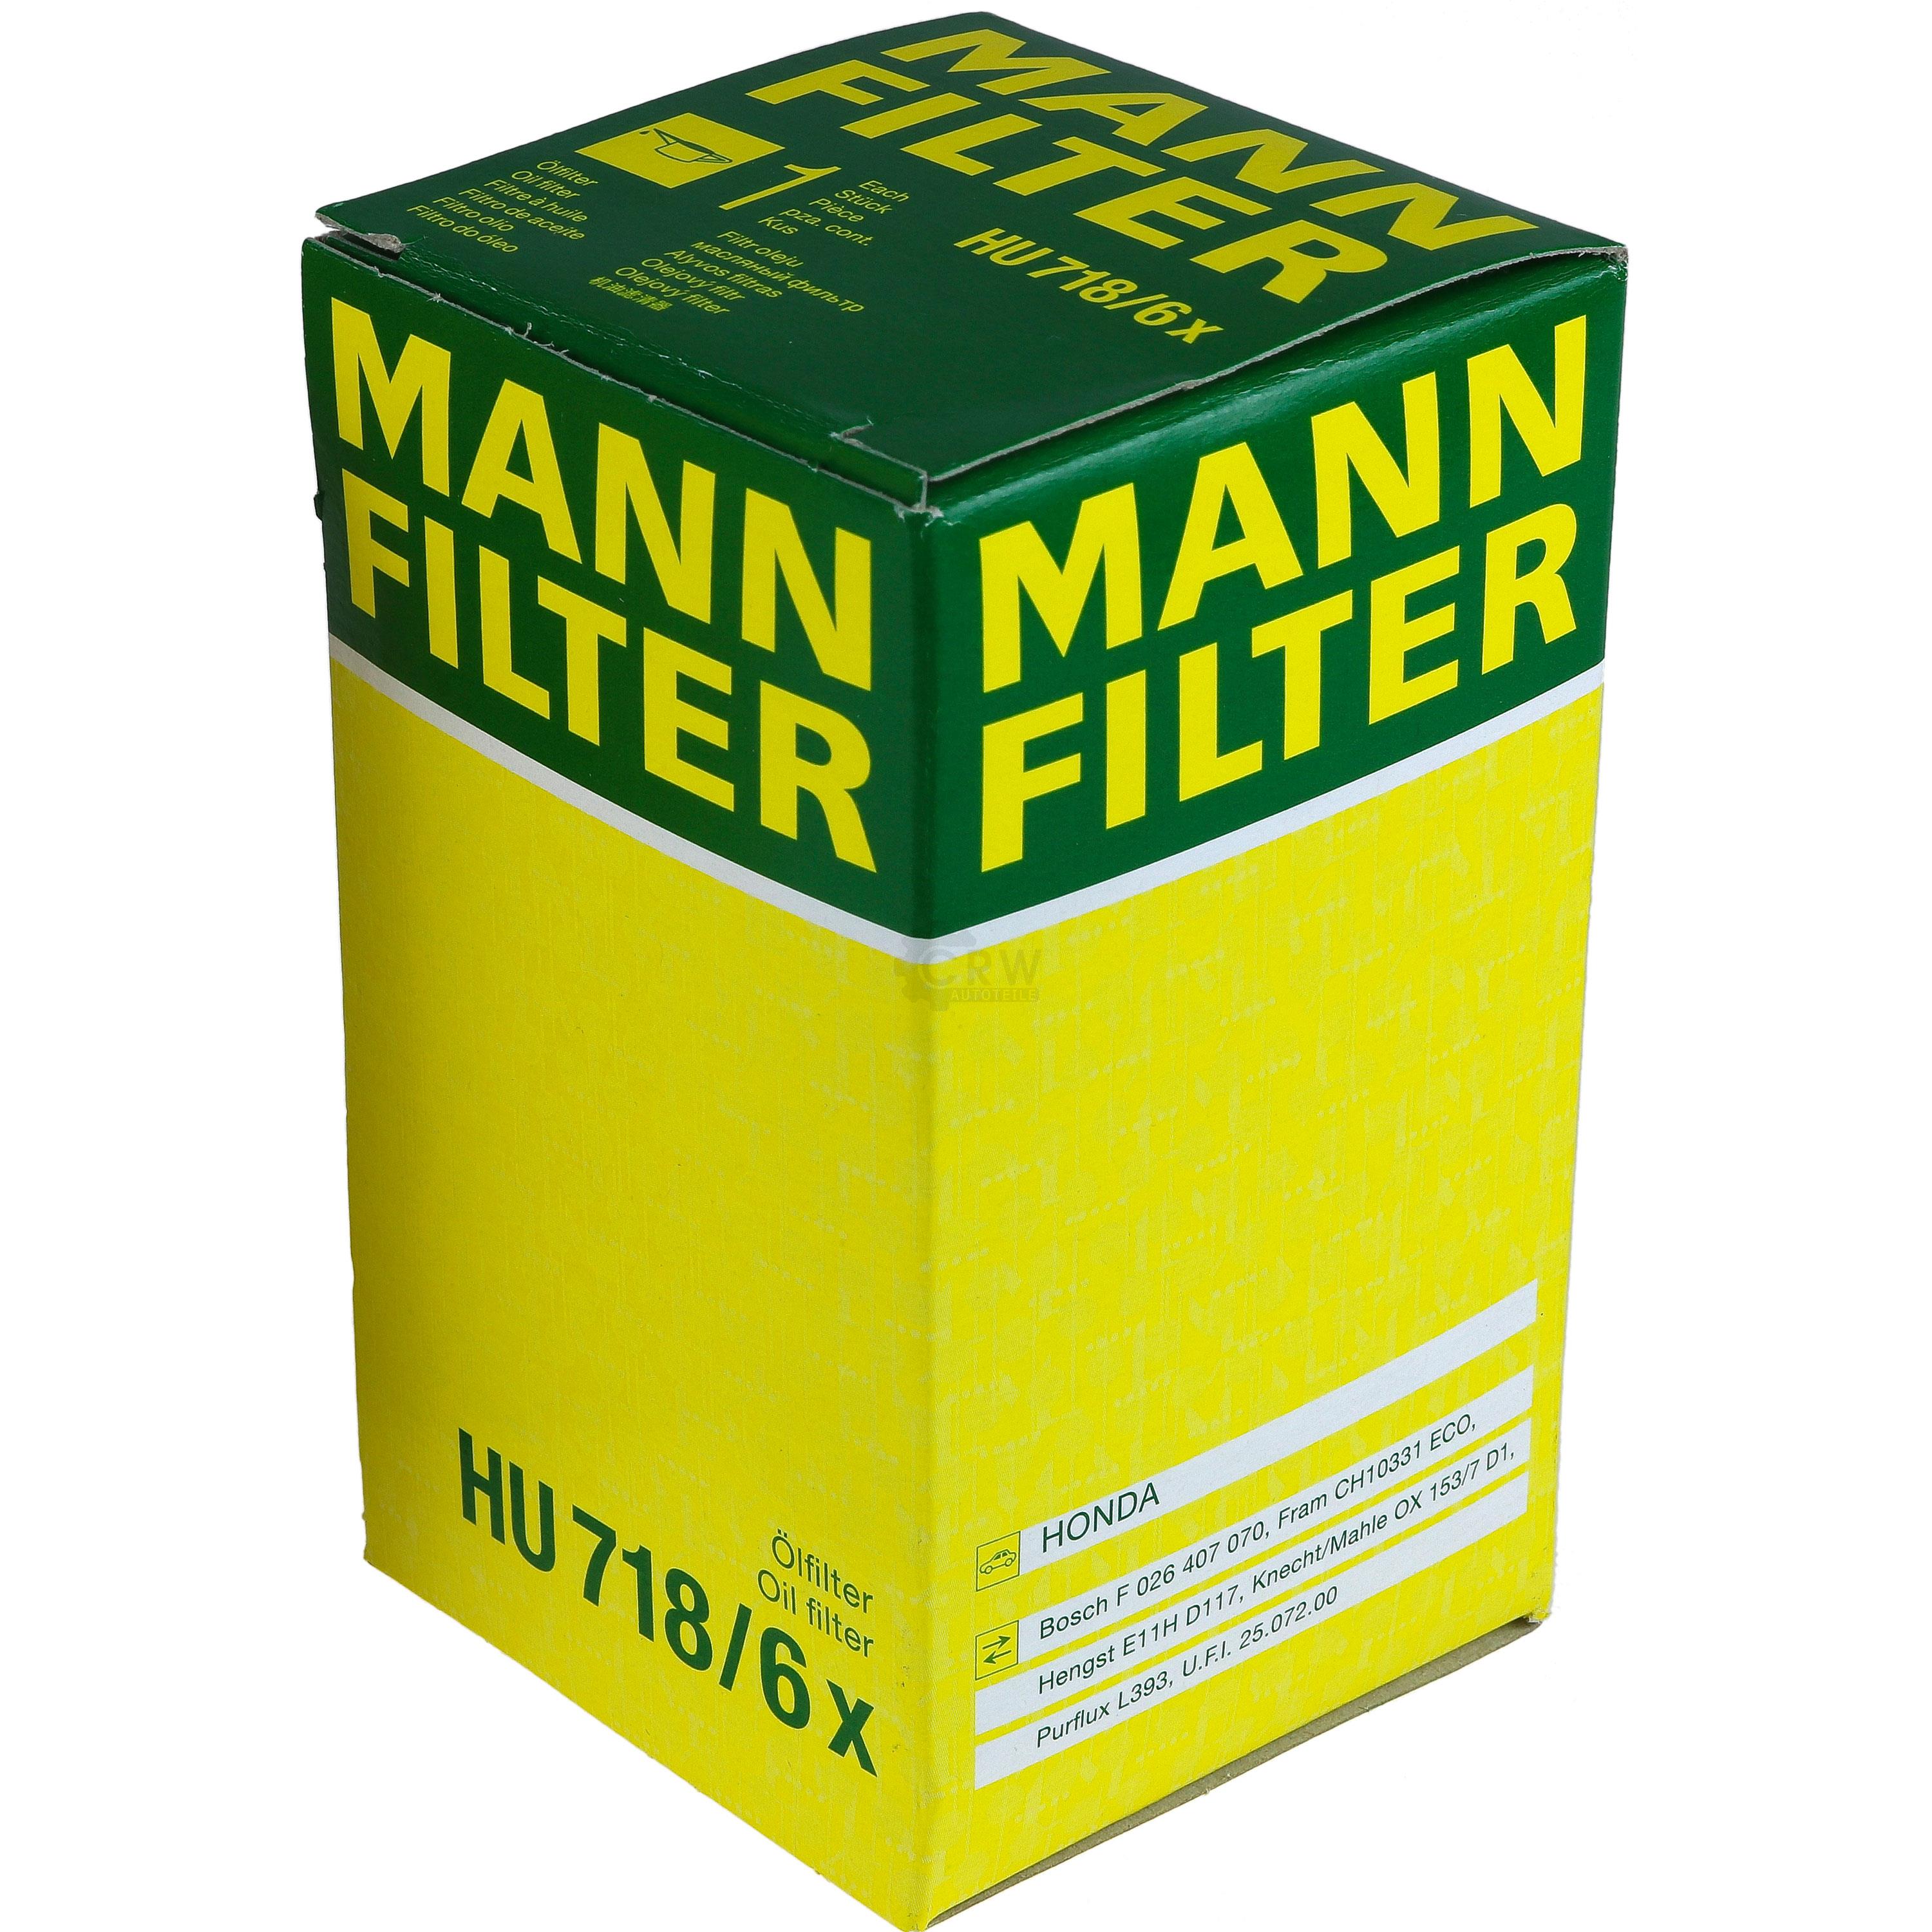 MANN-FILTER Ölfilter HU 718/6 x Oil Filter